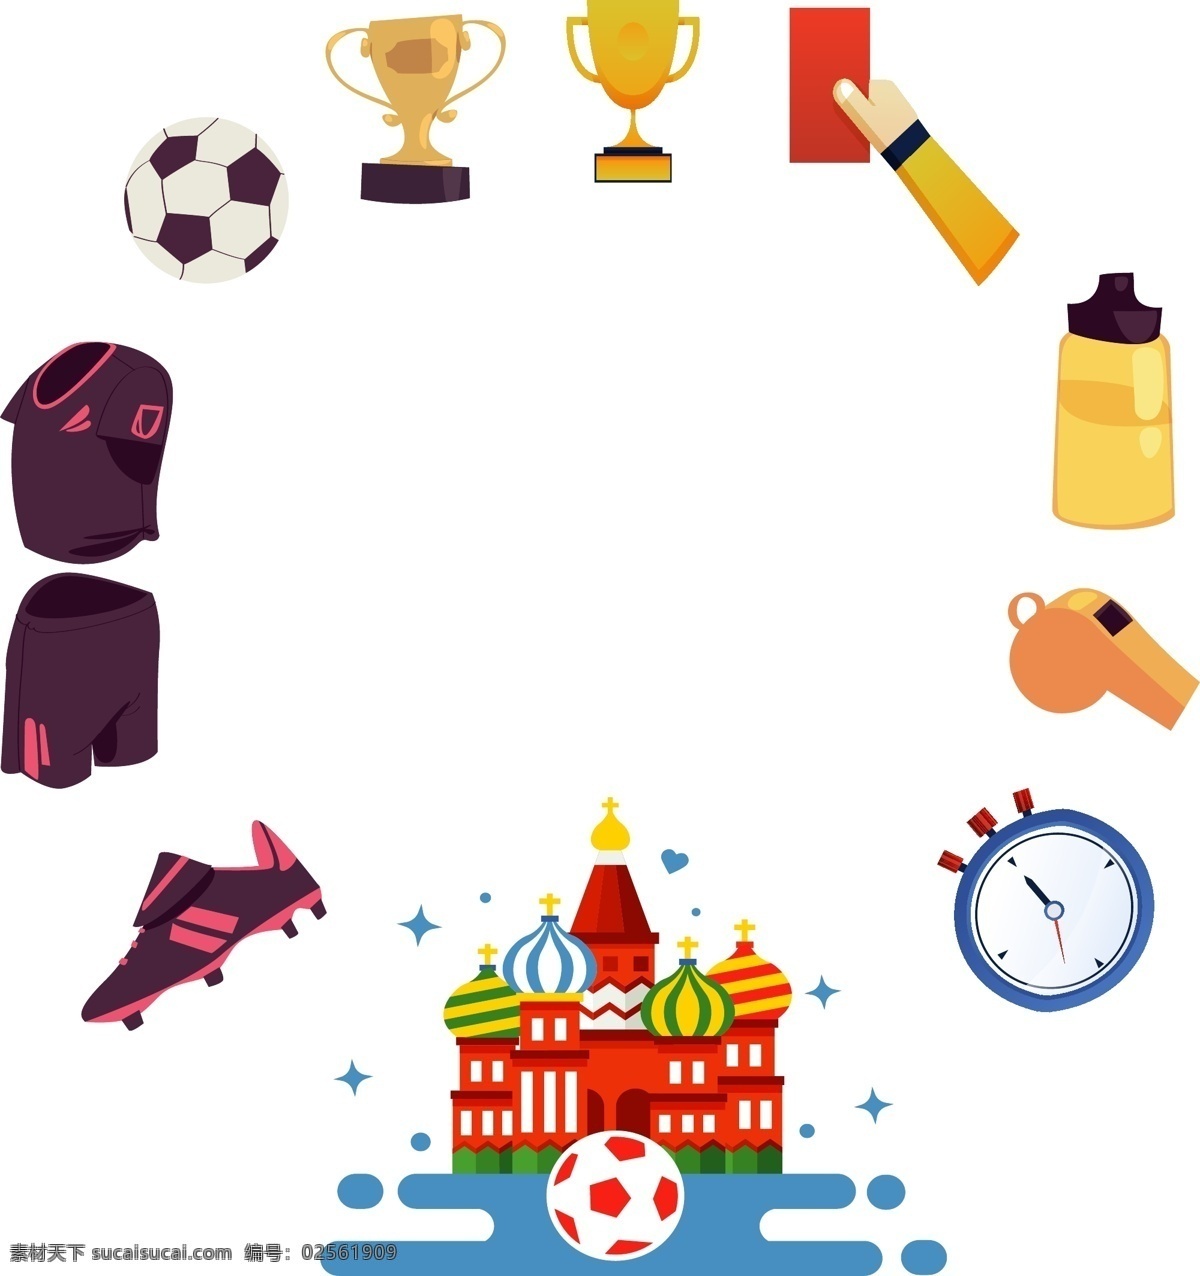 俄罗斯 世界杯 足球 用品 边框 足球赛 世界杯边框 比赛 云朵边框 足球鞋 守门员手套 定时器 清新边框